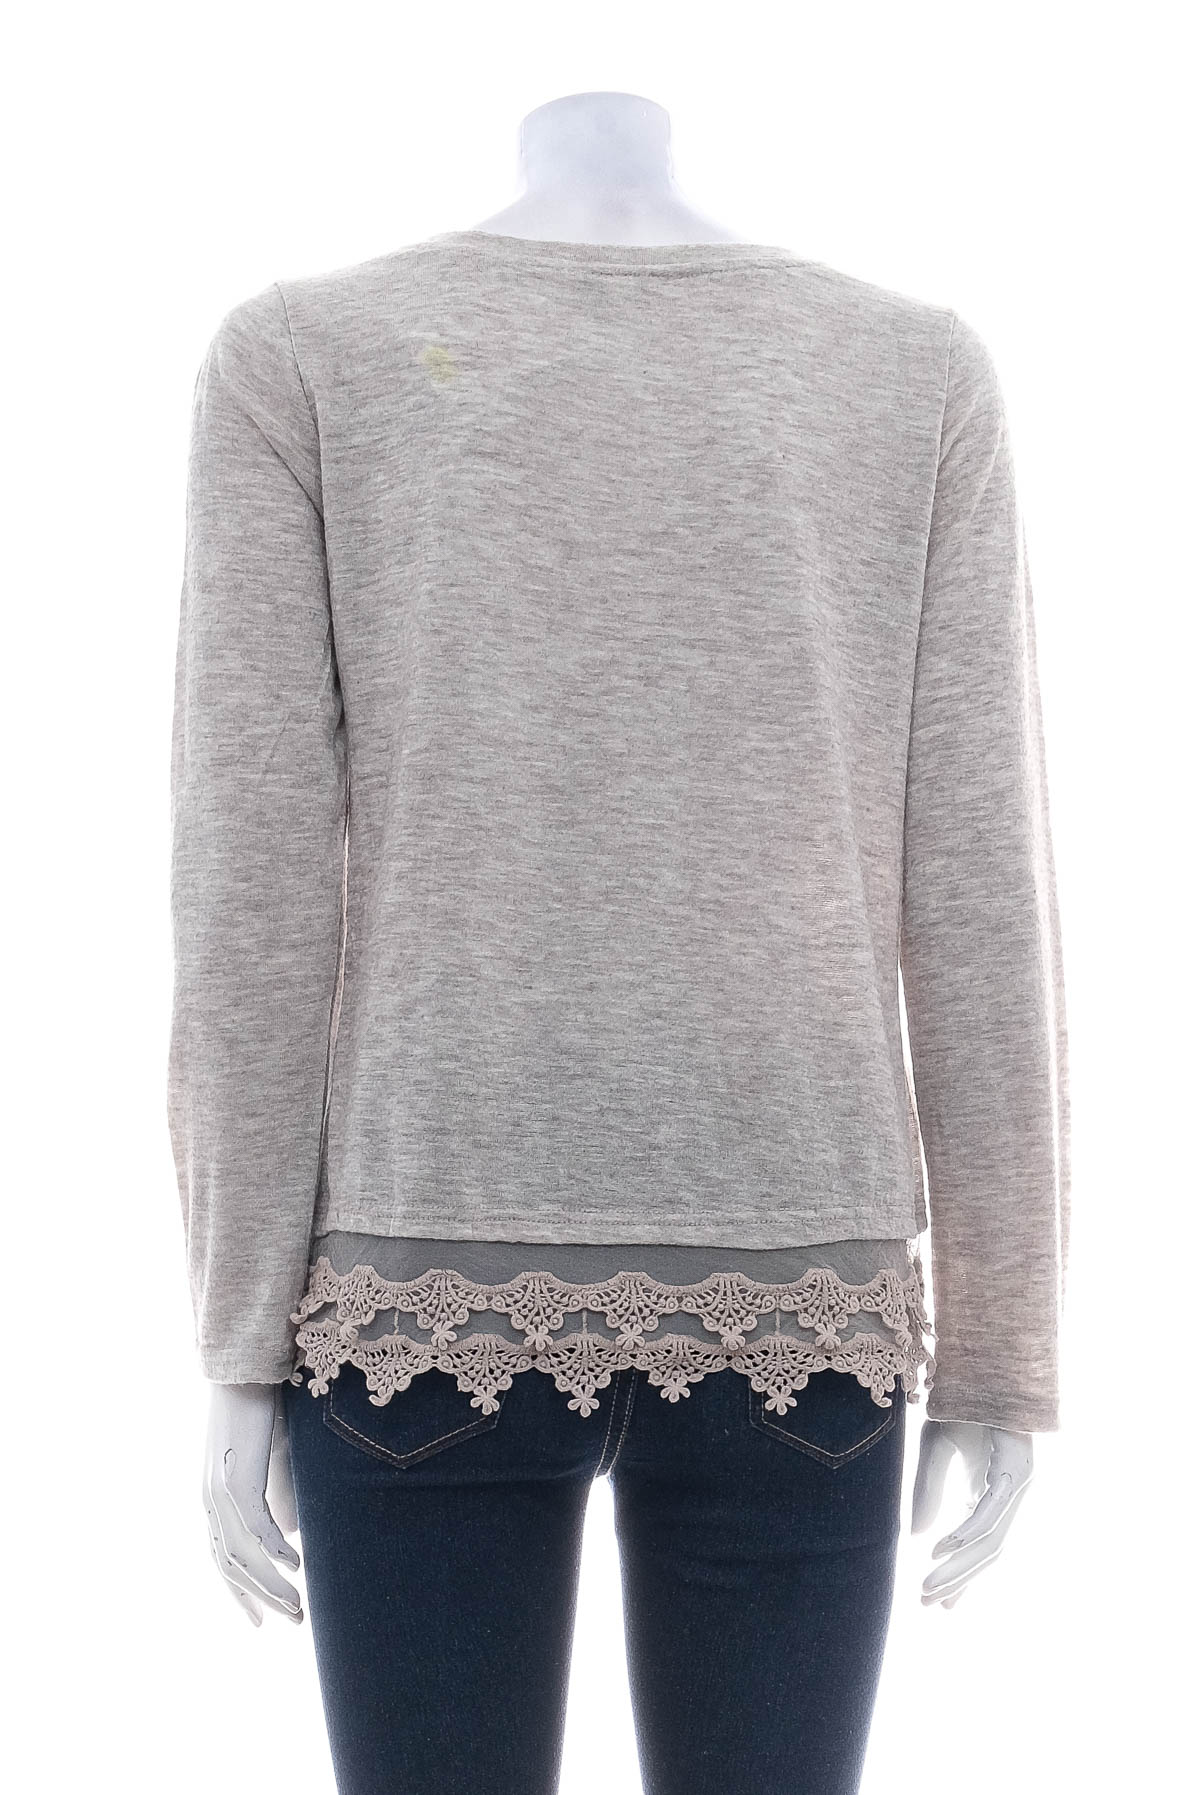 Women's sweater - IRIS - 1